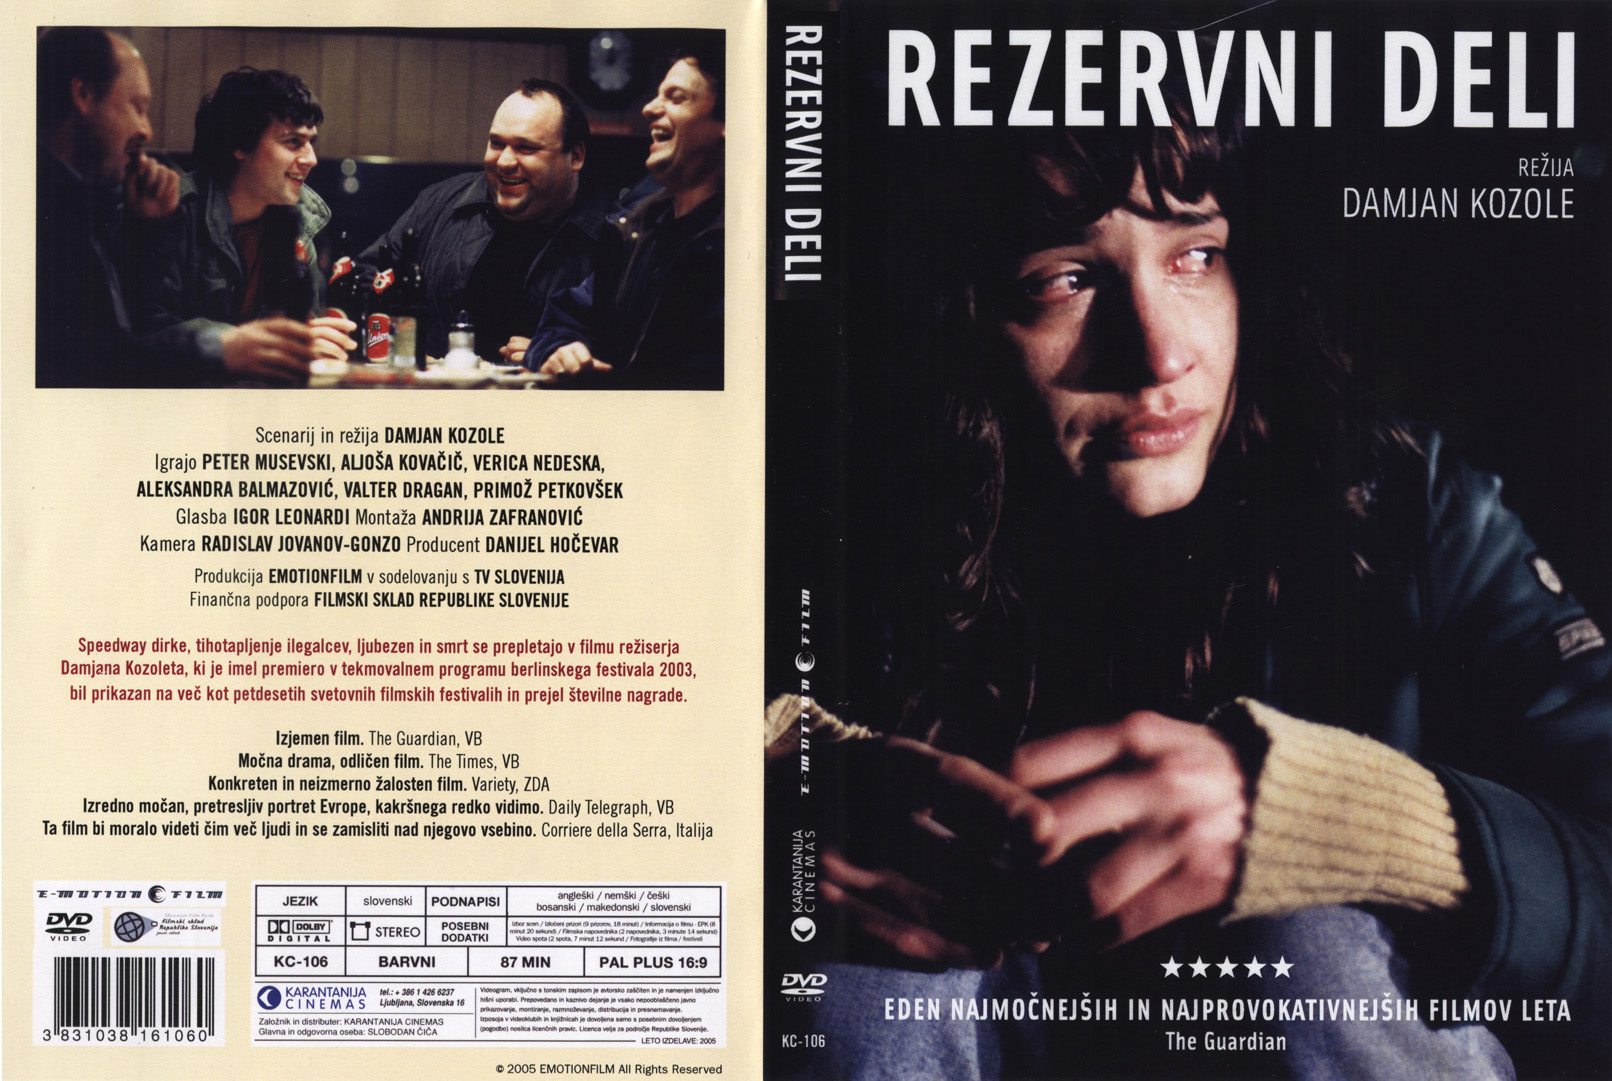 Click to view full size image -  DVD Cover - R - rezervni_deli_dvd - rezervni_deli_dvd.jpg